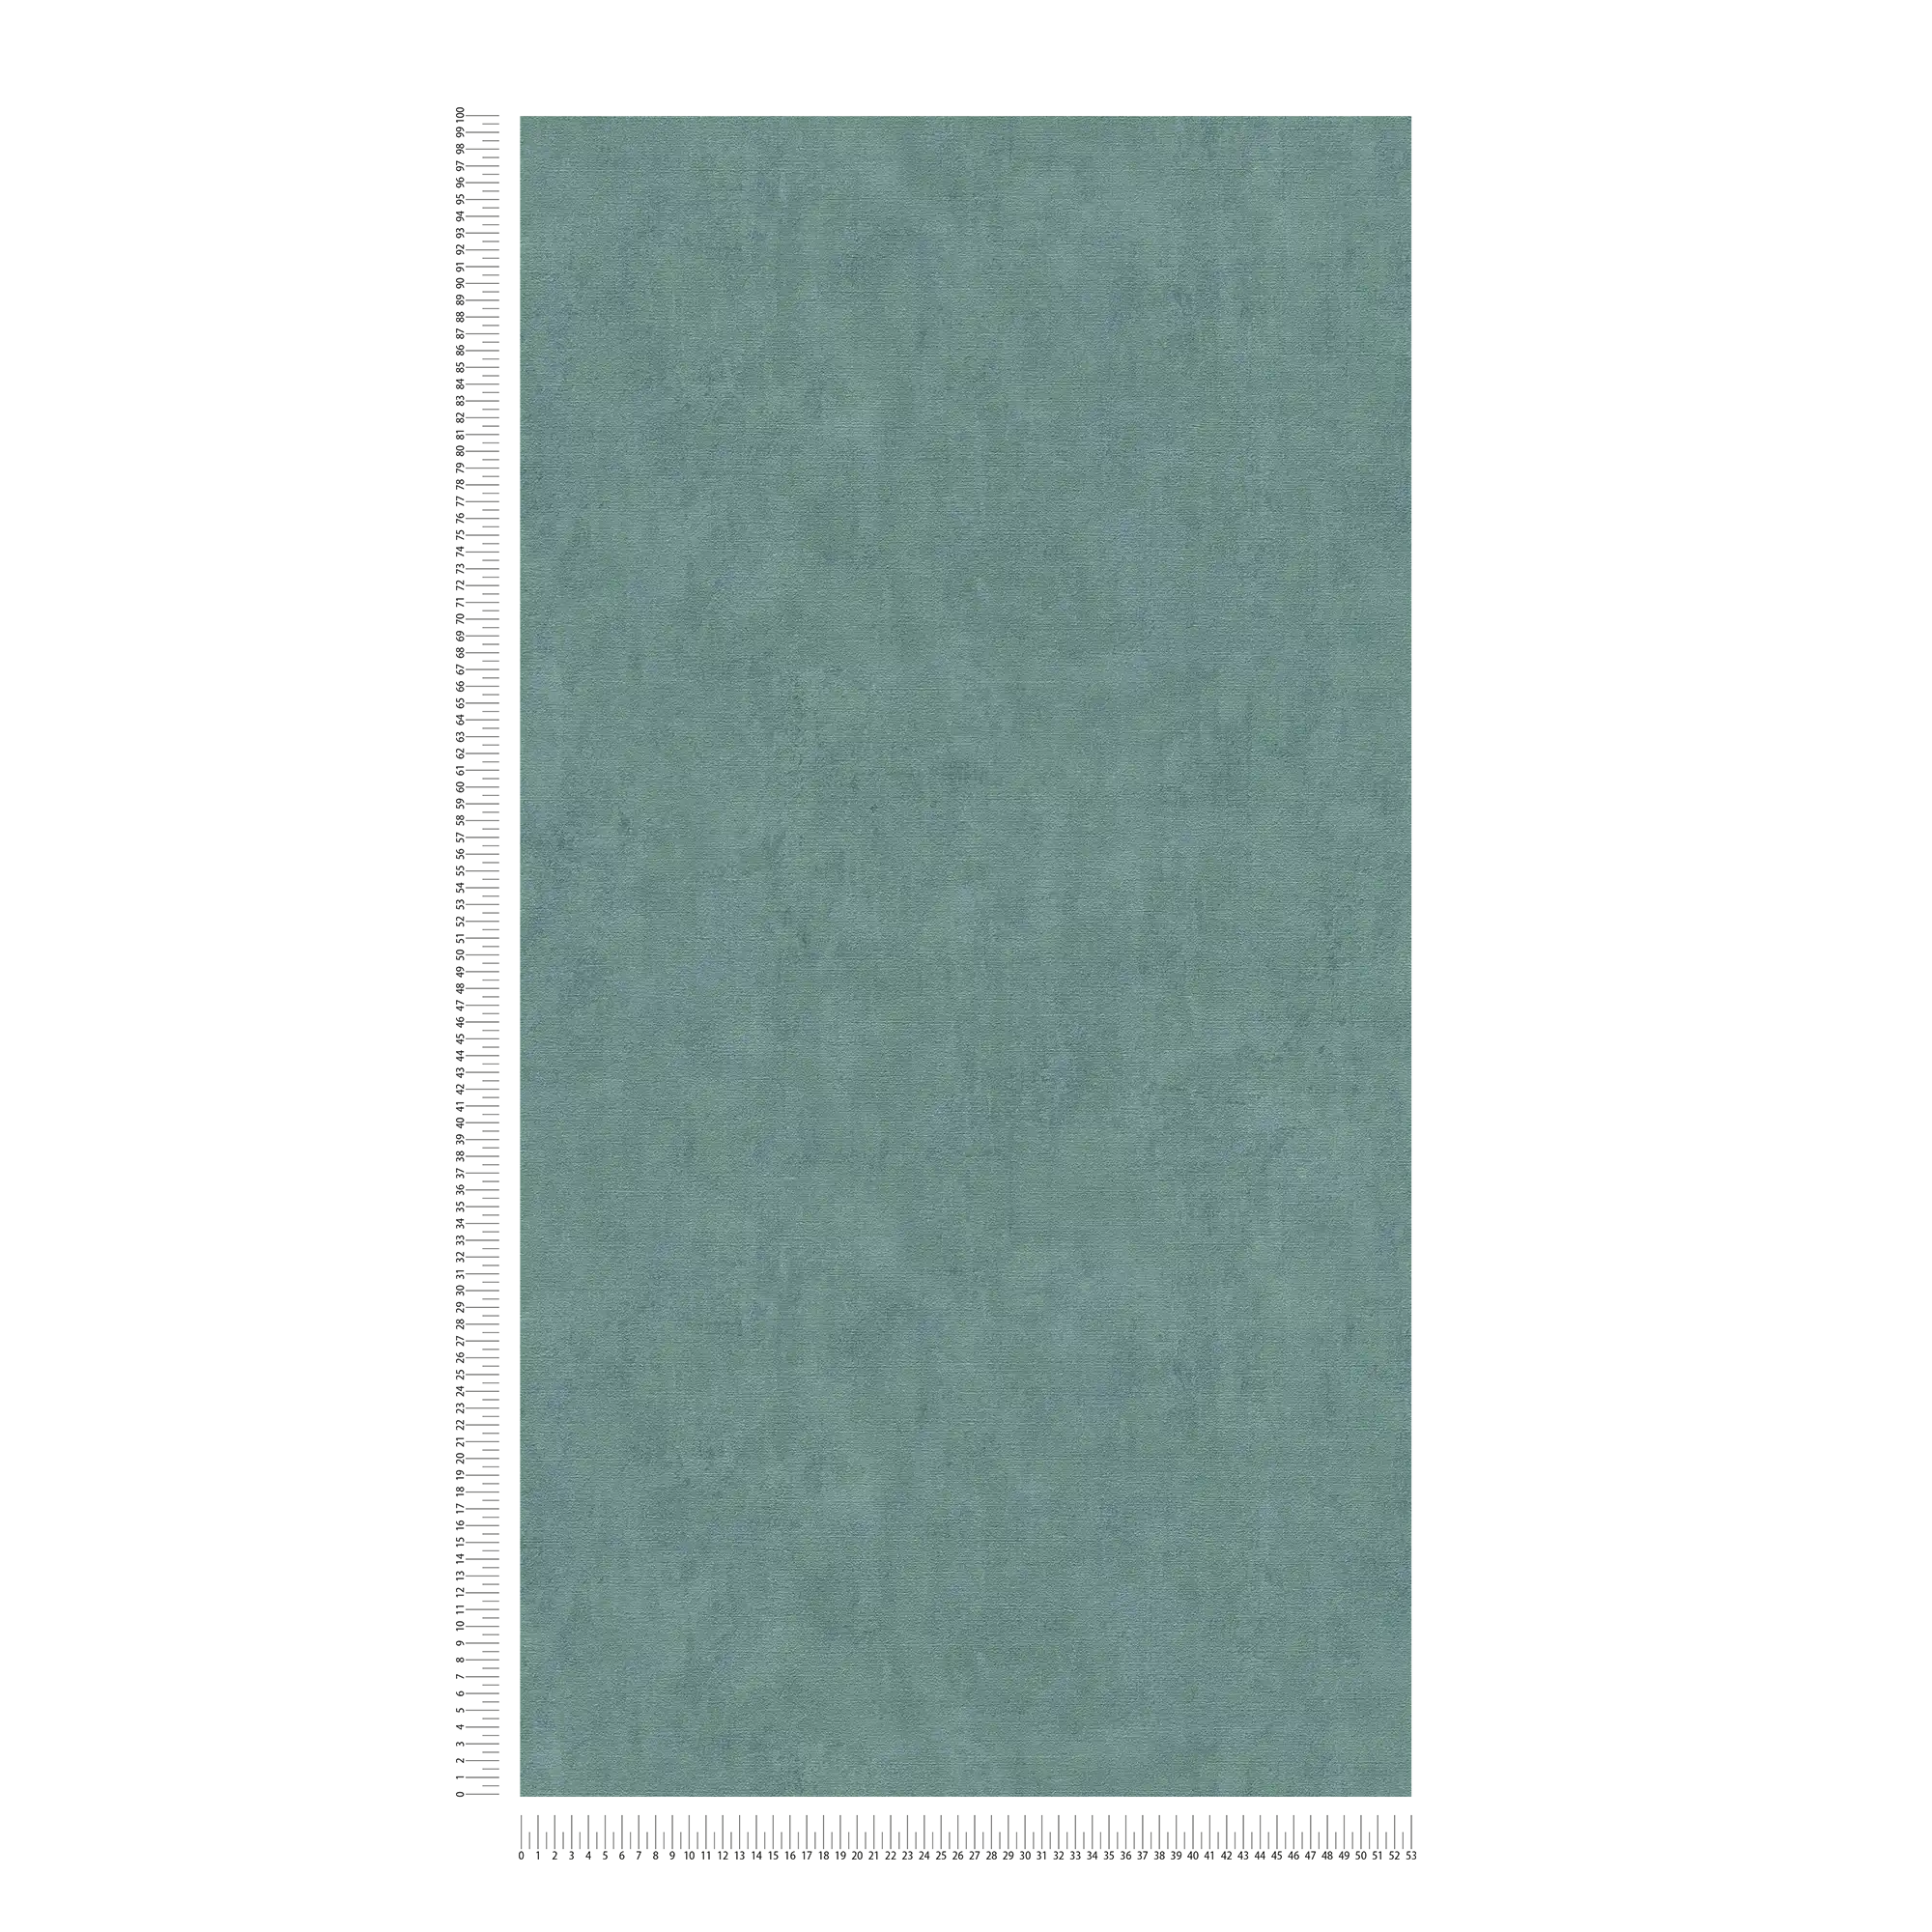             Plain wallpaper petrol mottled green accents - blue, green
        